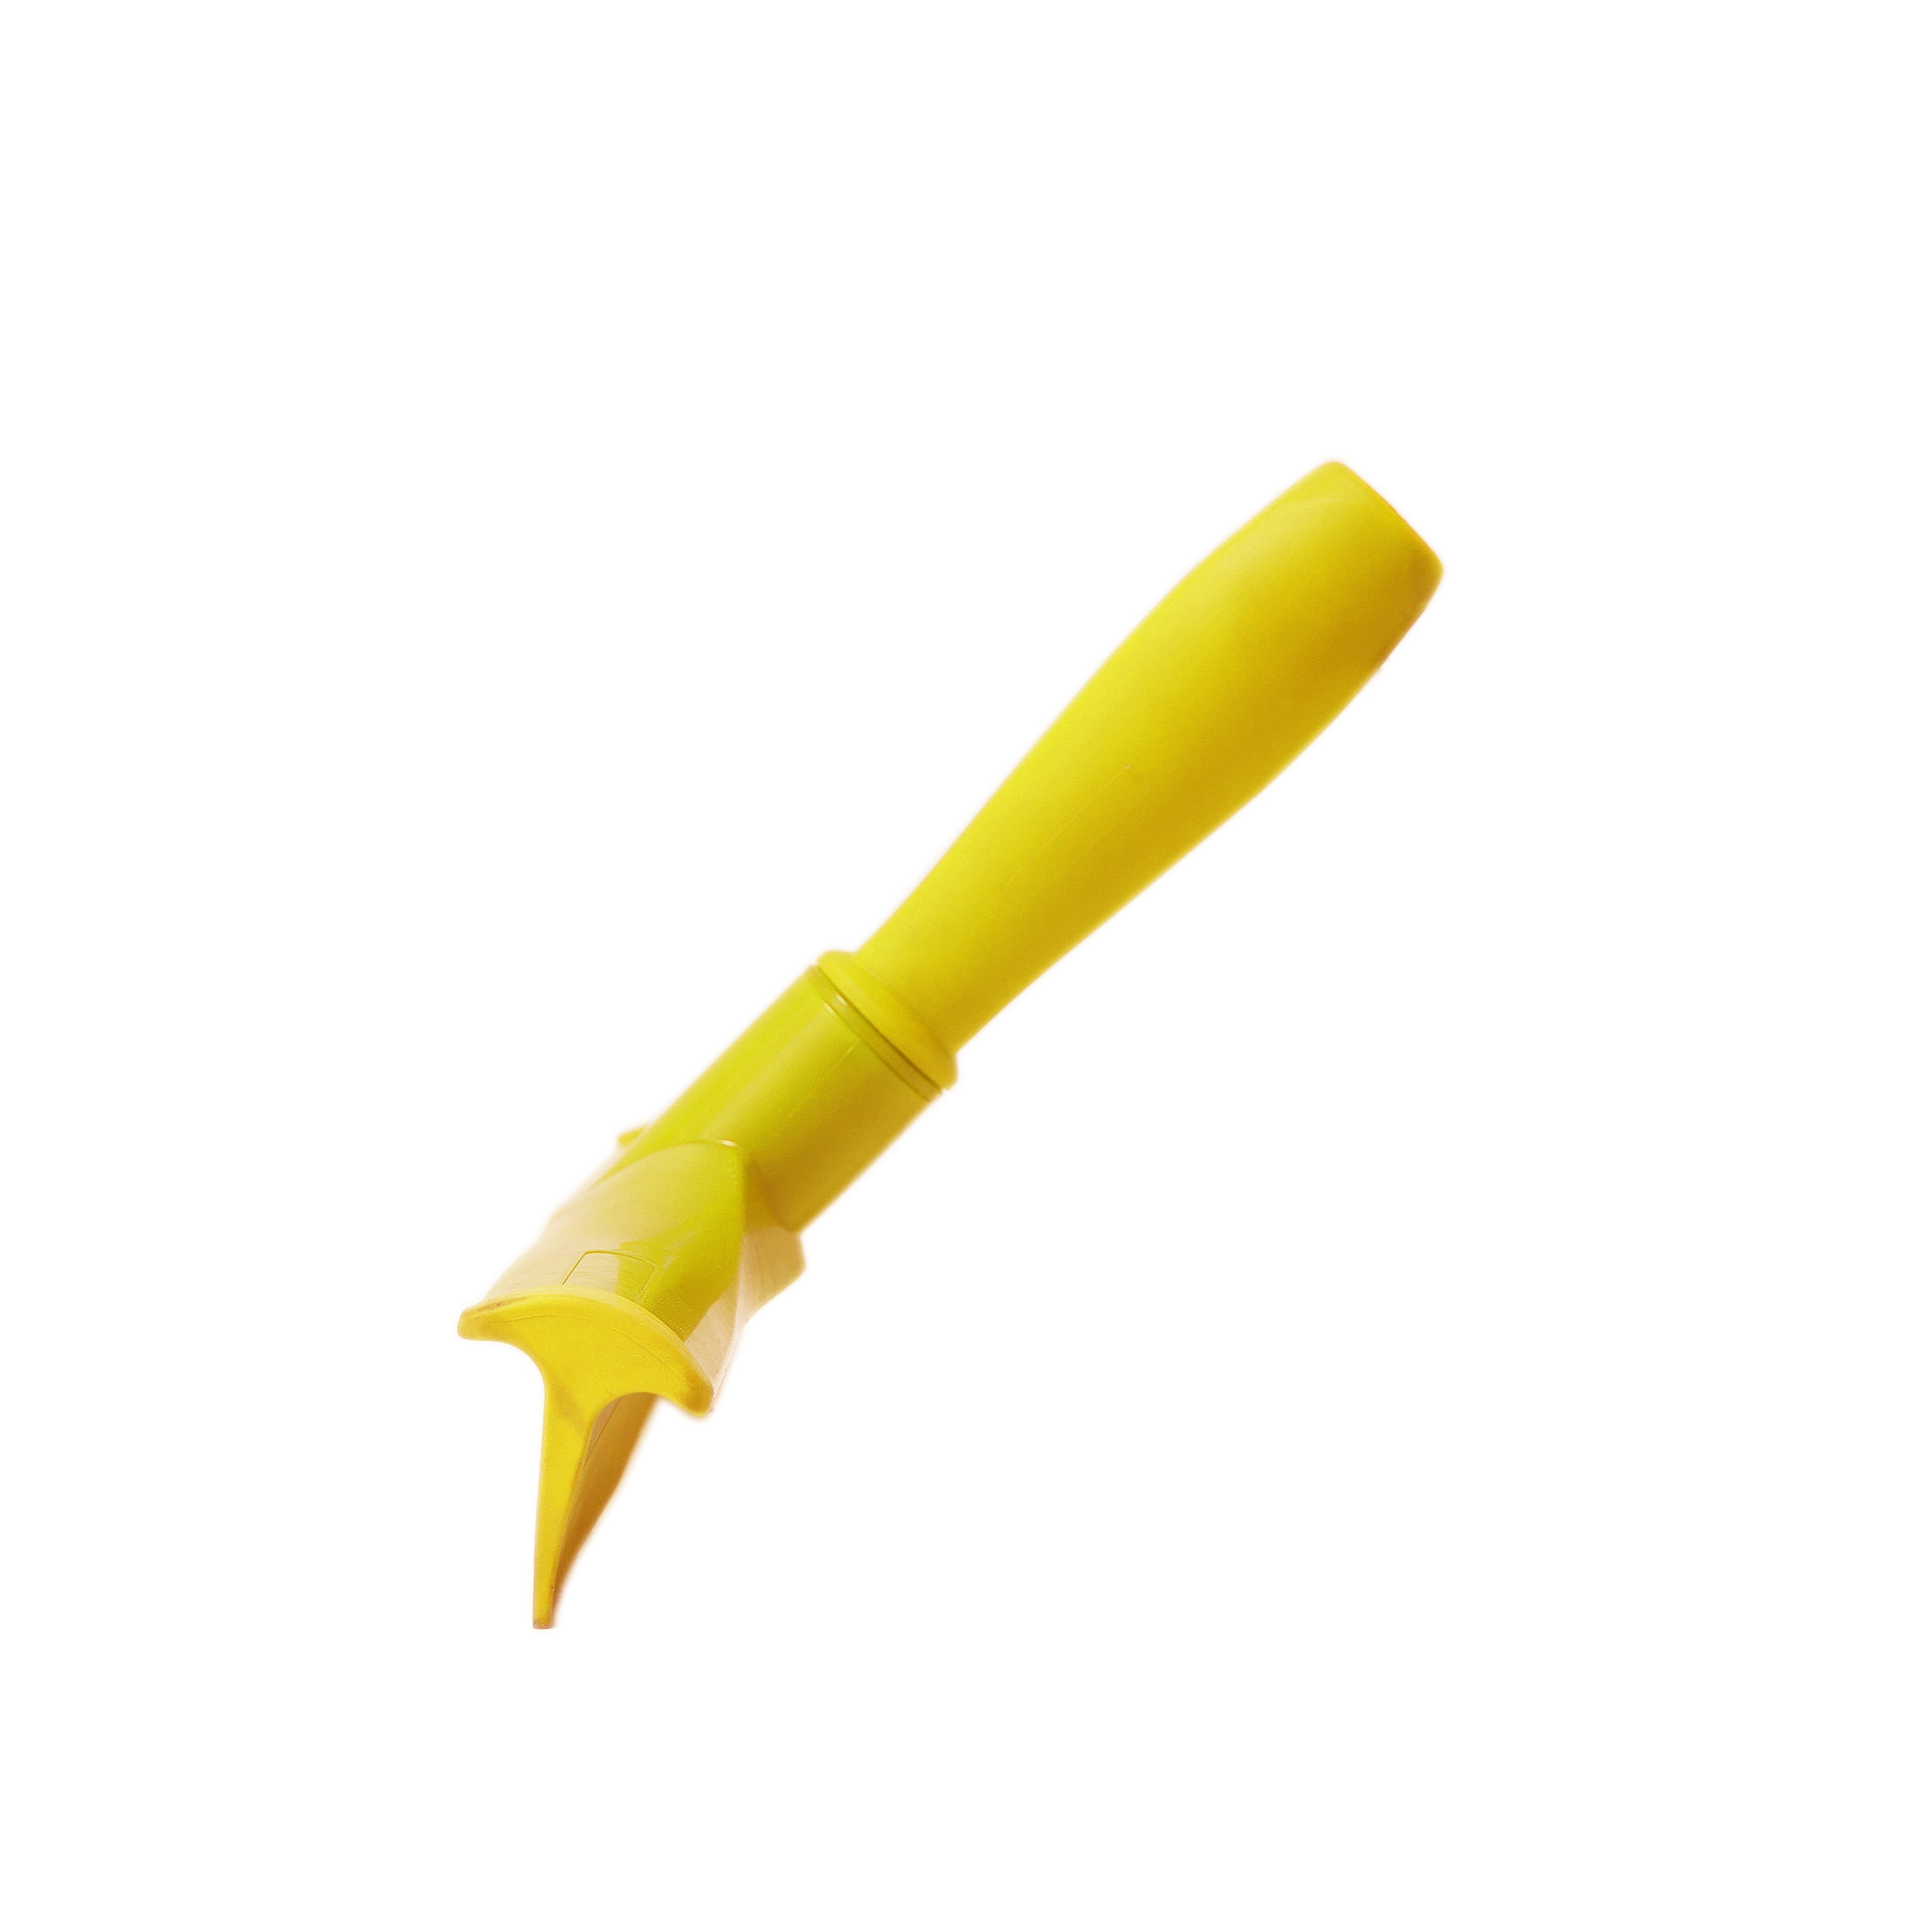 Сгон HACCPER сверхгигиеничный ручной однолезвенный с мини-рукояткой, 300 мм, желтый